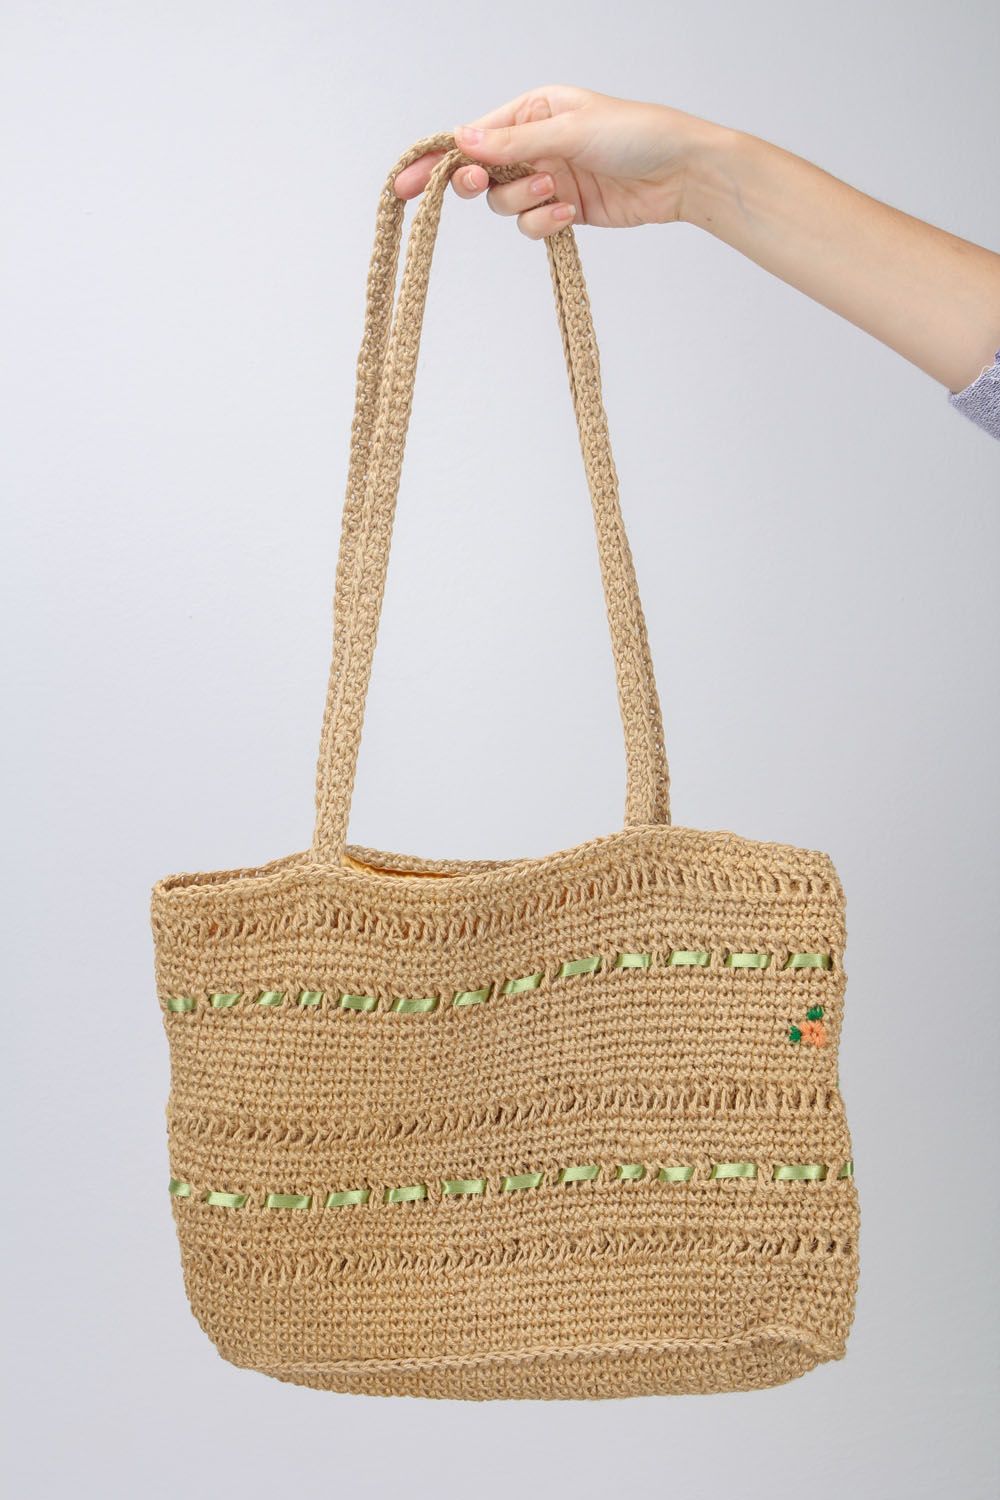 Crochet shoulder bag  photo 2